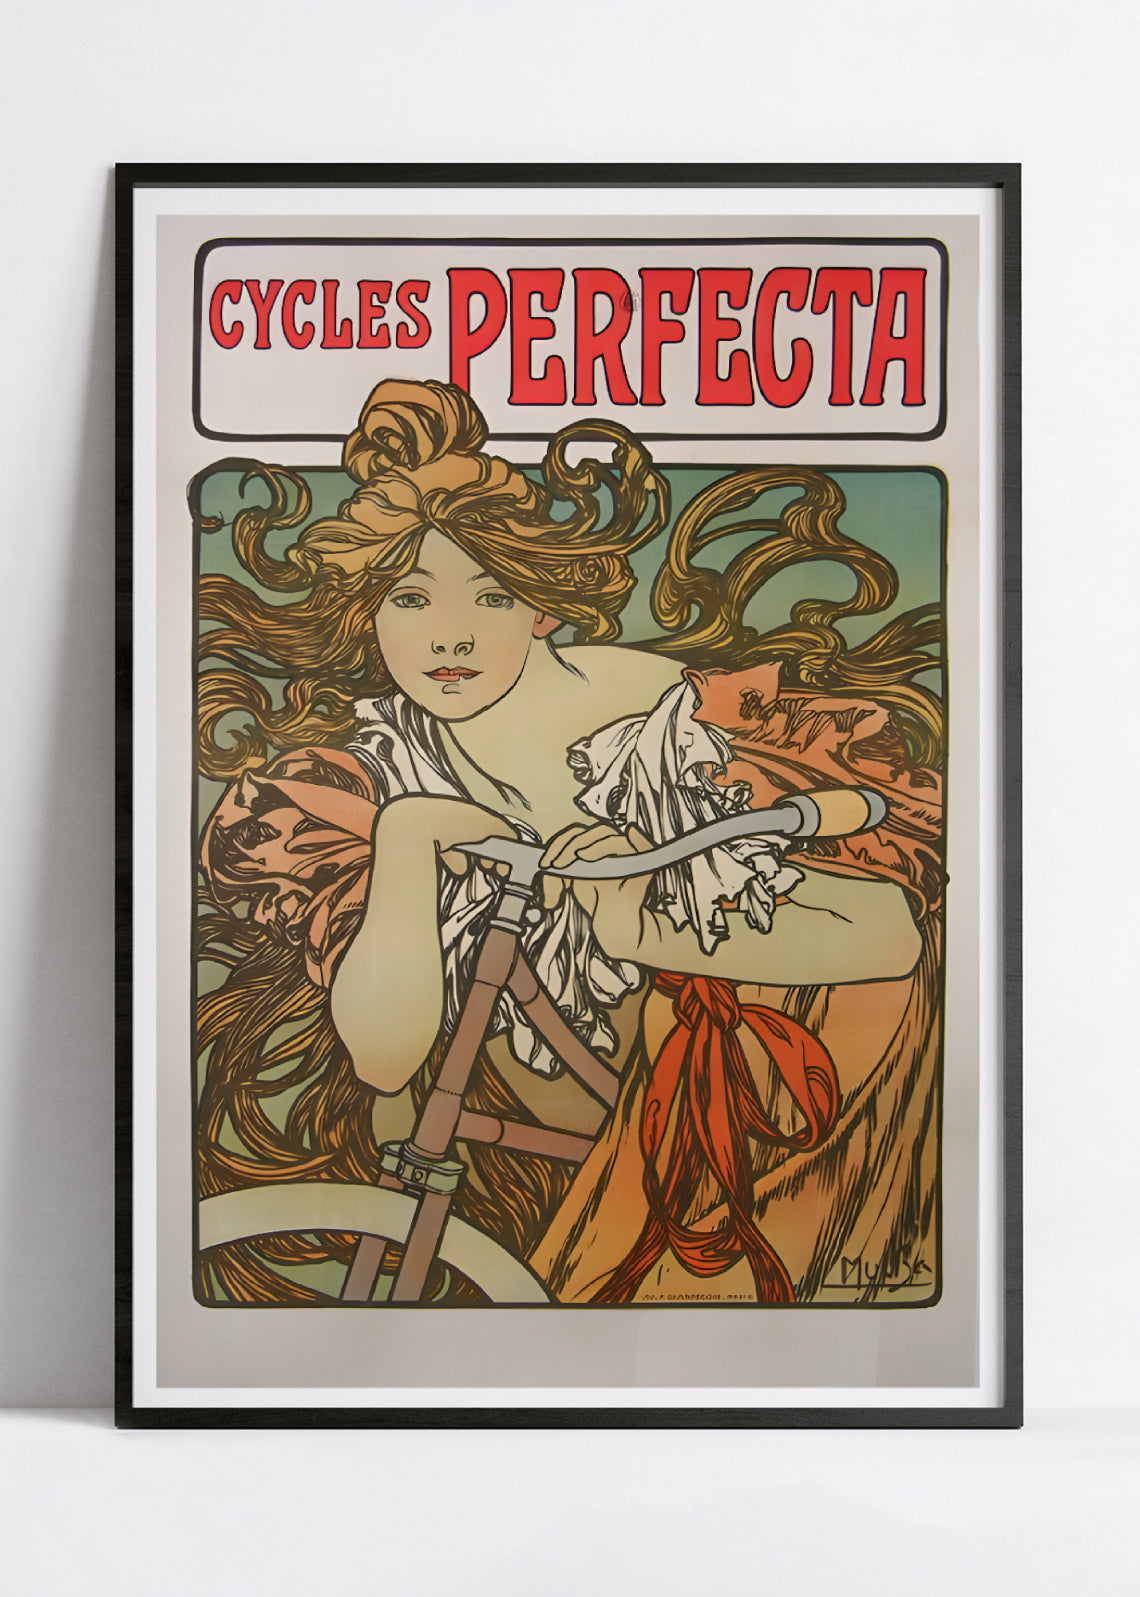 Affiche velo vintage "Cycles Perfecta" - Alphonse Mucha - Haute Définition - papier mat 230gr/m²